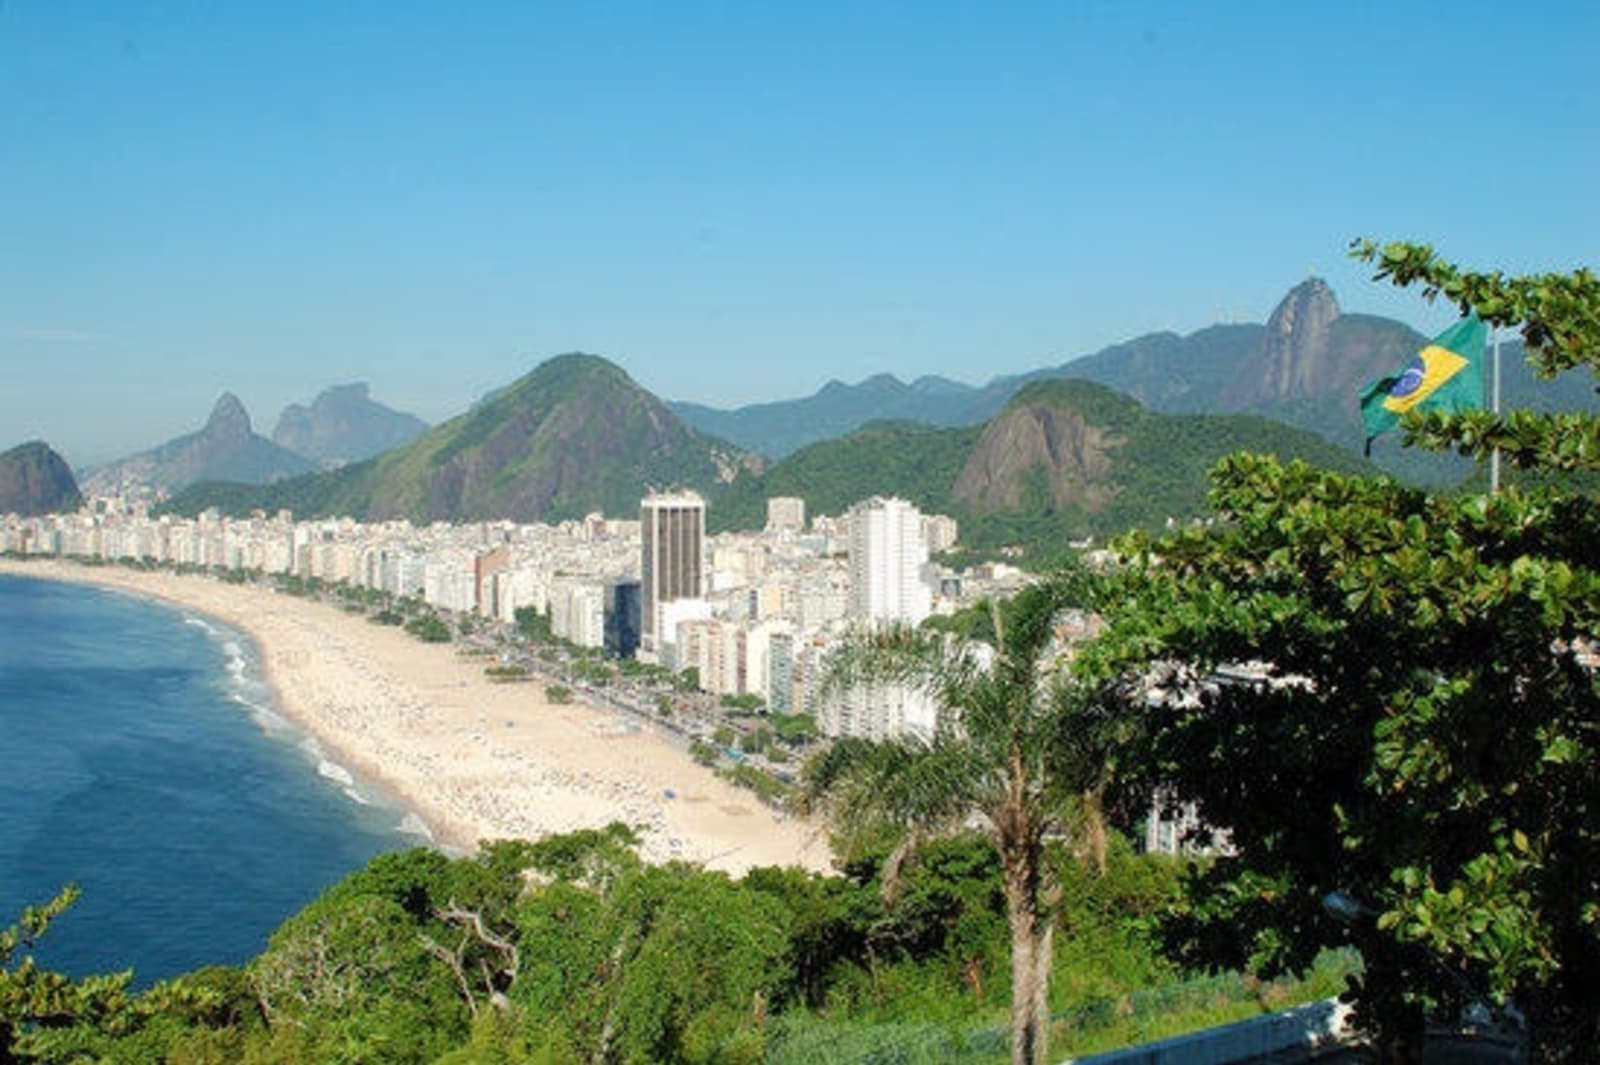 rsz_copacabana_beach_brazil_2657249.jpg